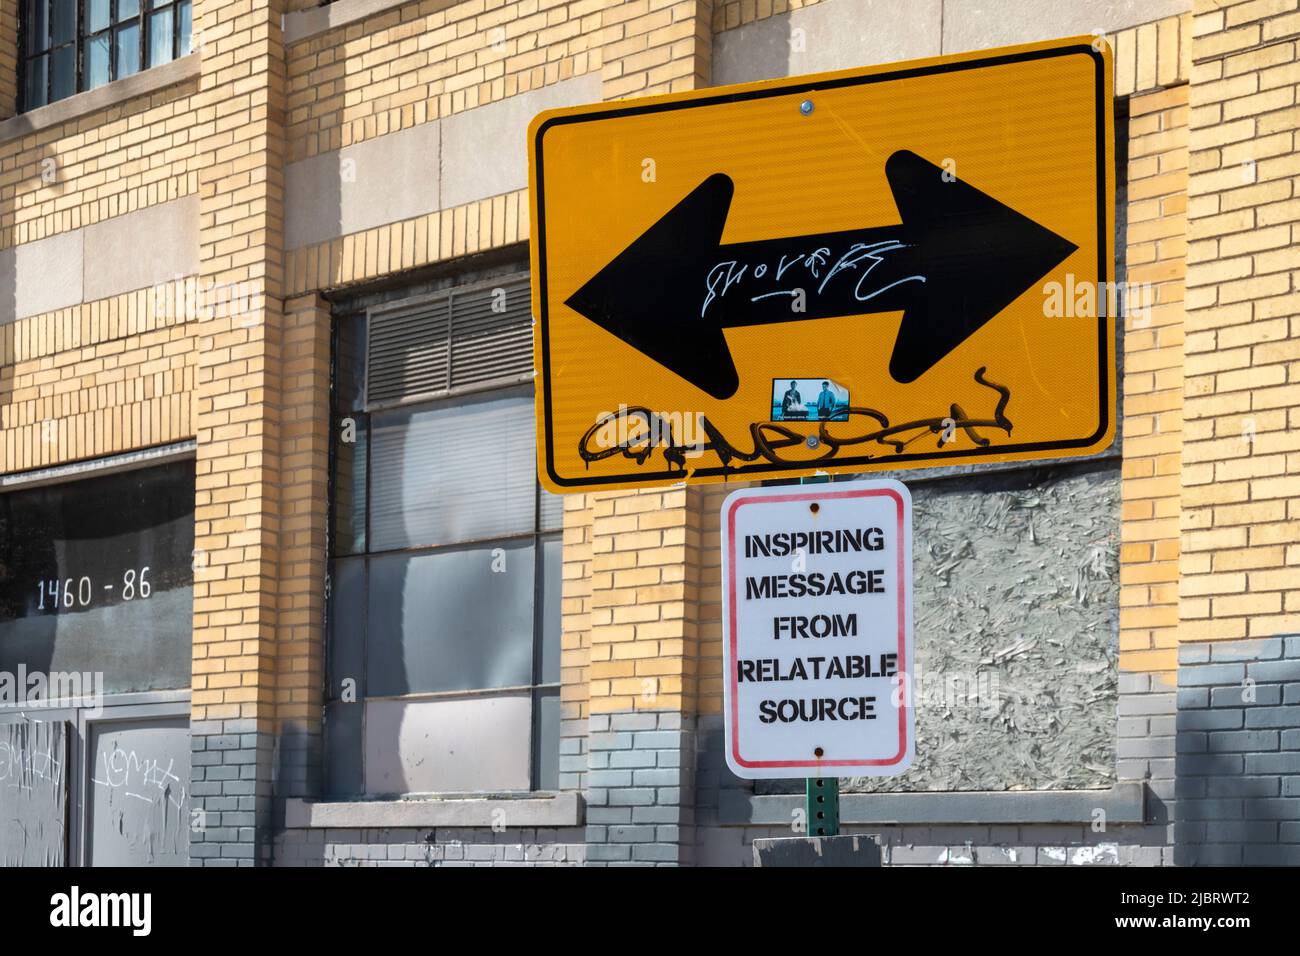 Detroit, Michigan - Un panneau de signalisation avec un message inspirant, mais troublant. Banque D'Images